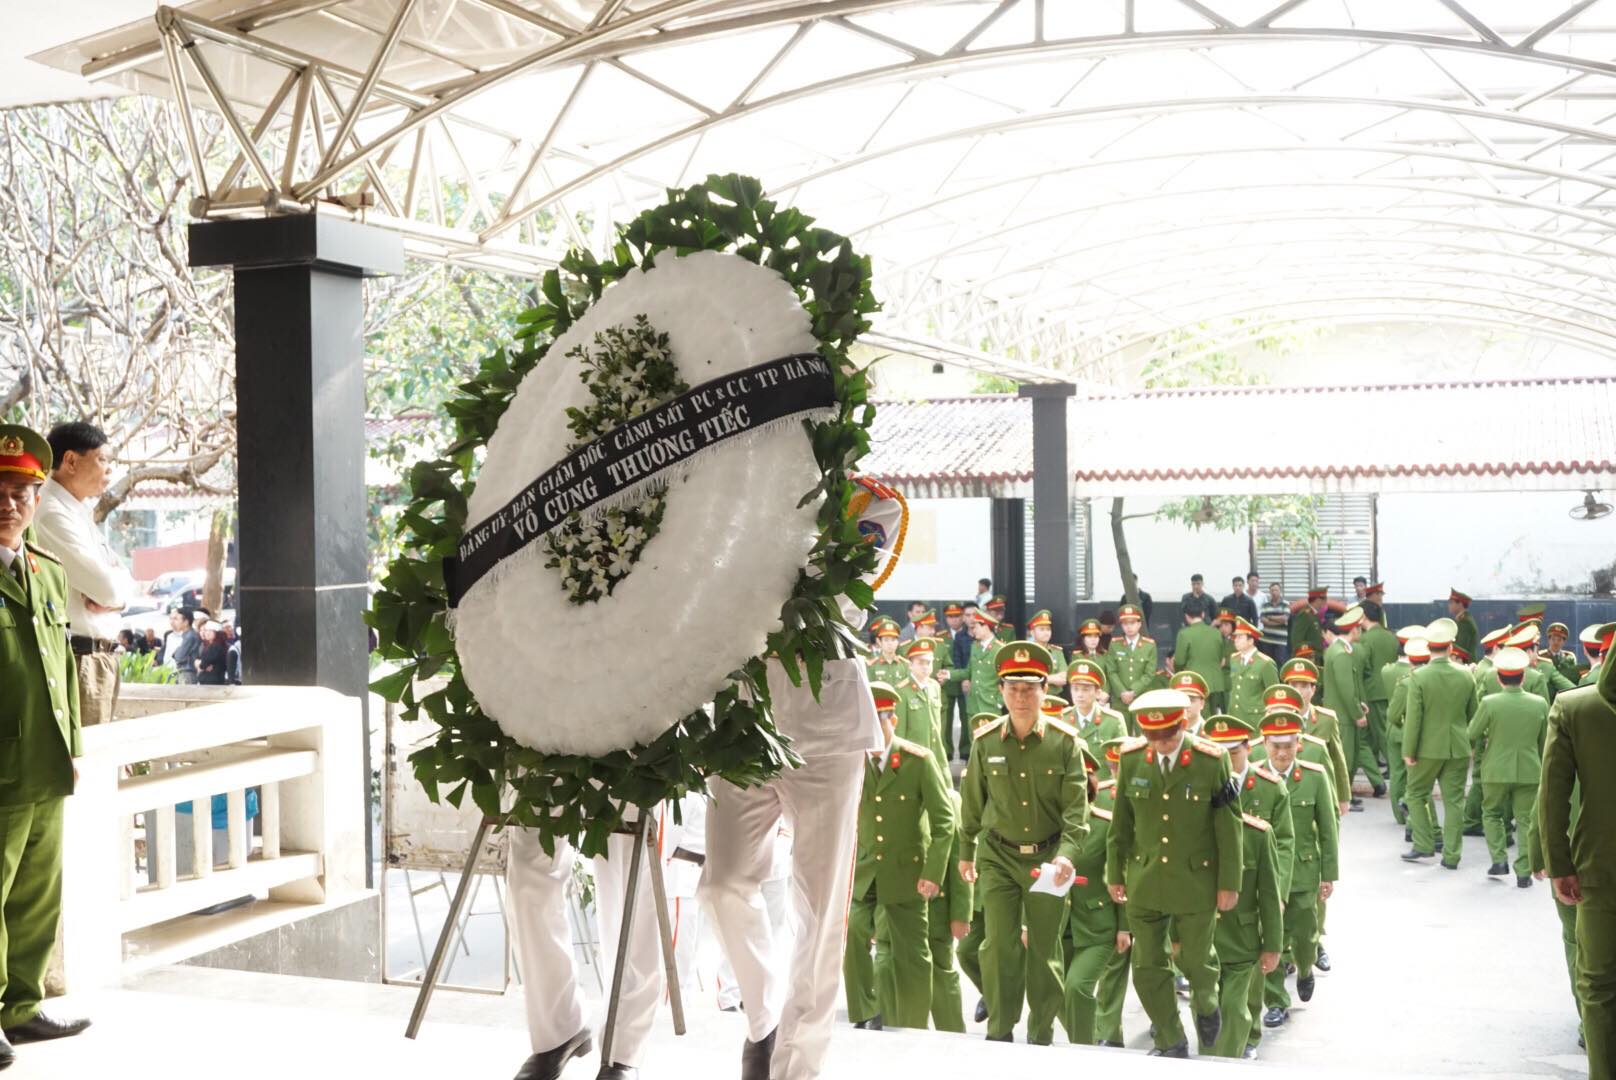 Khoảng 9h tại nhà tang lễ Bệnh viện Bạch Mai, đồng đội và gia đình đau buồn tổ chức lễ tang cho đồng chí thượng sĩ Chử Văn Khánh